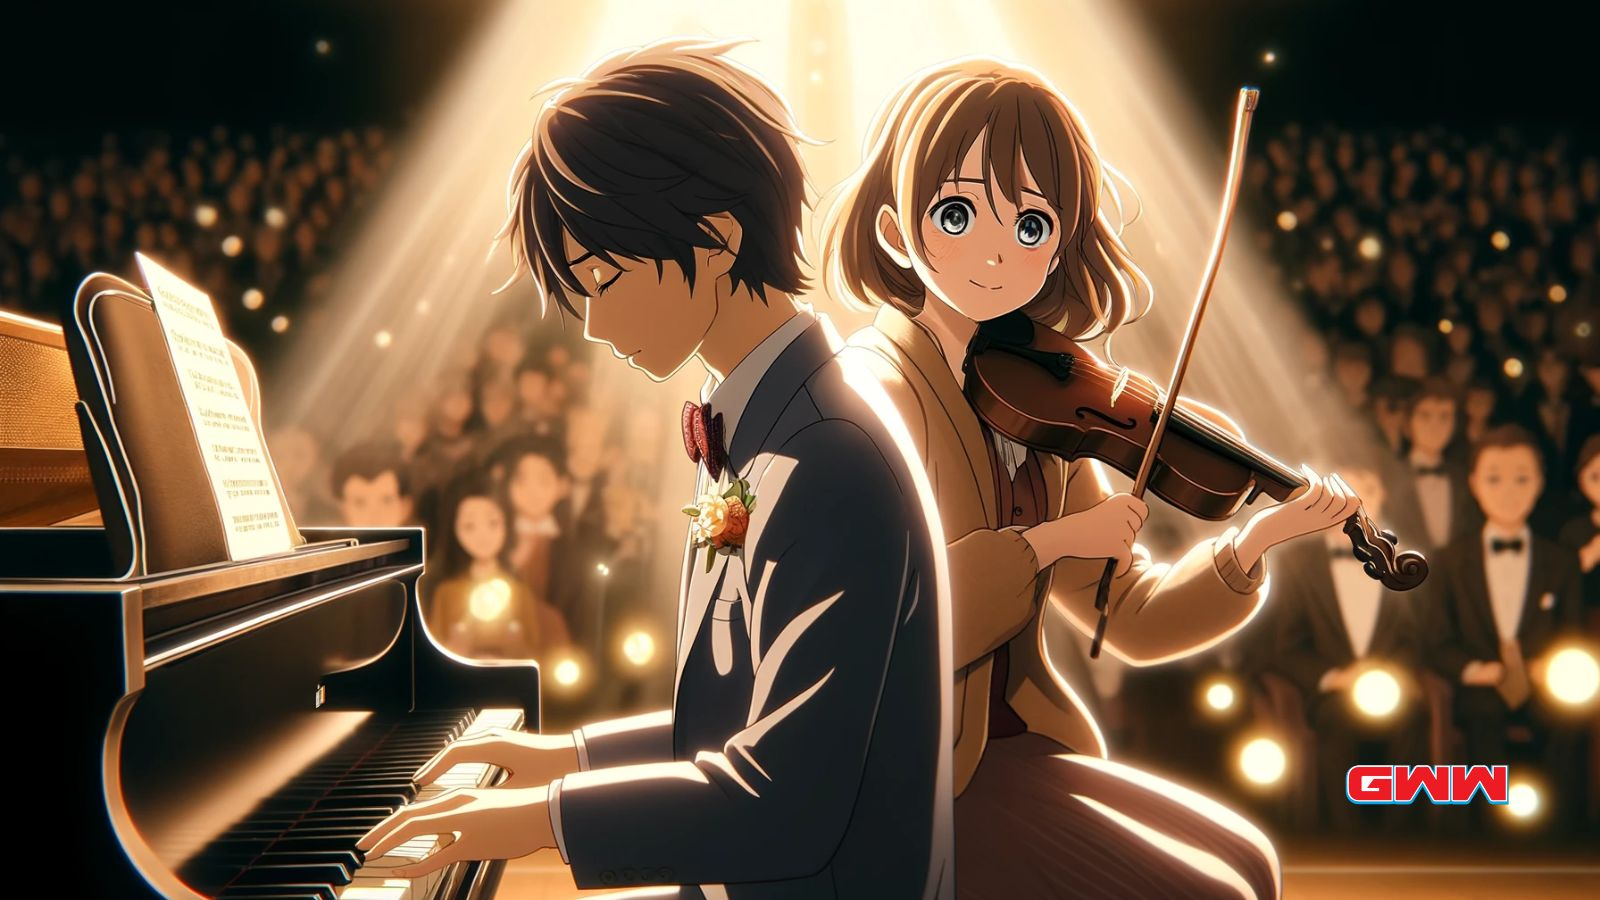 Kousei y Kaori actuando juntos en el mejor anime de romance